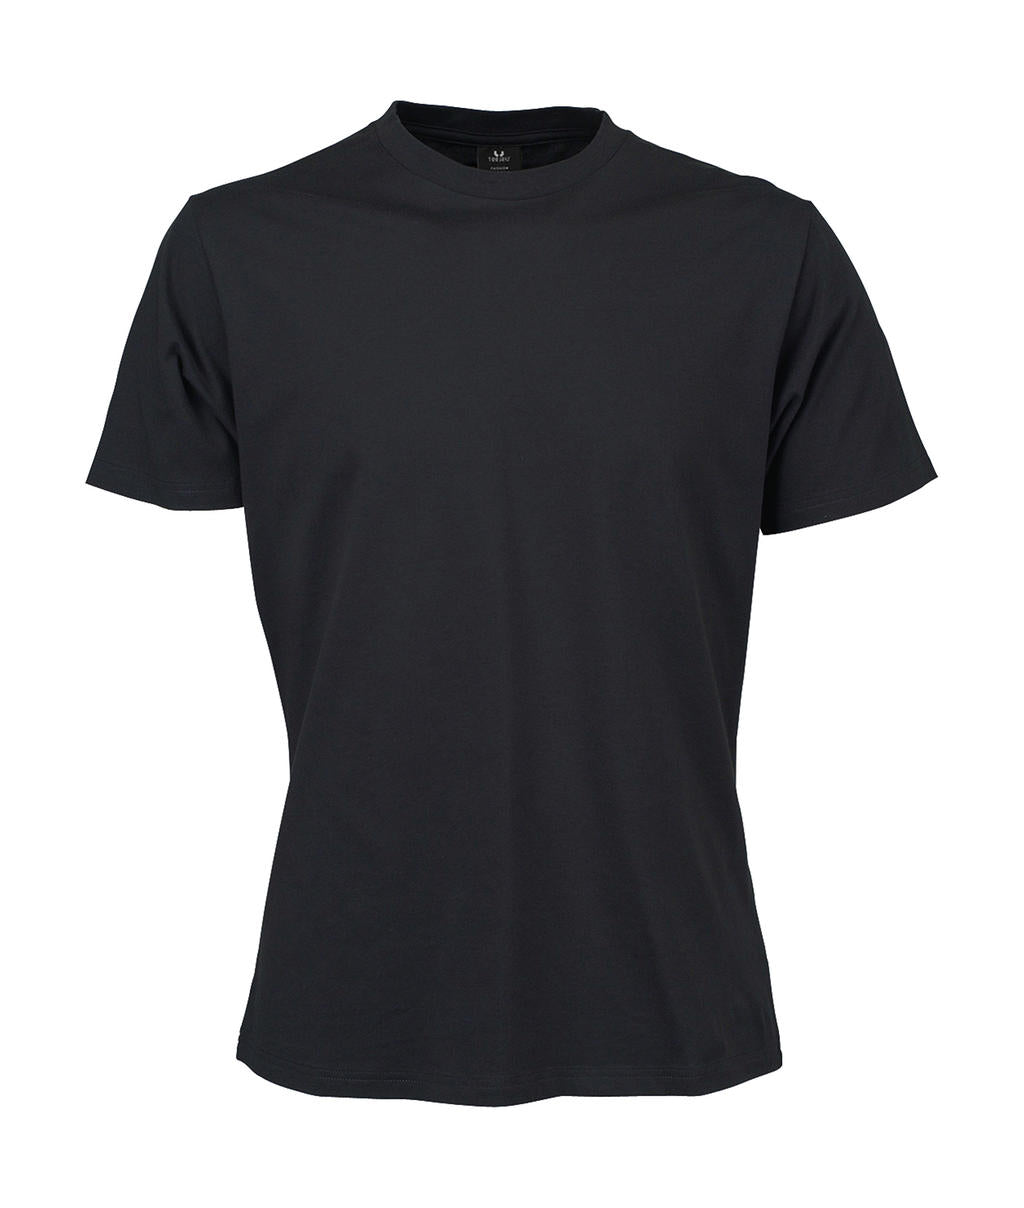 Tee Jays Herren Rundhalsshirt Basic T-Shirt Tee Shirt TShirt